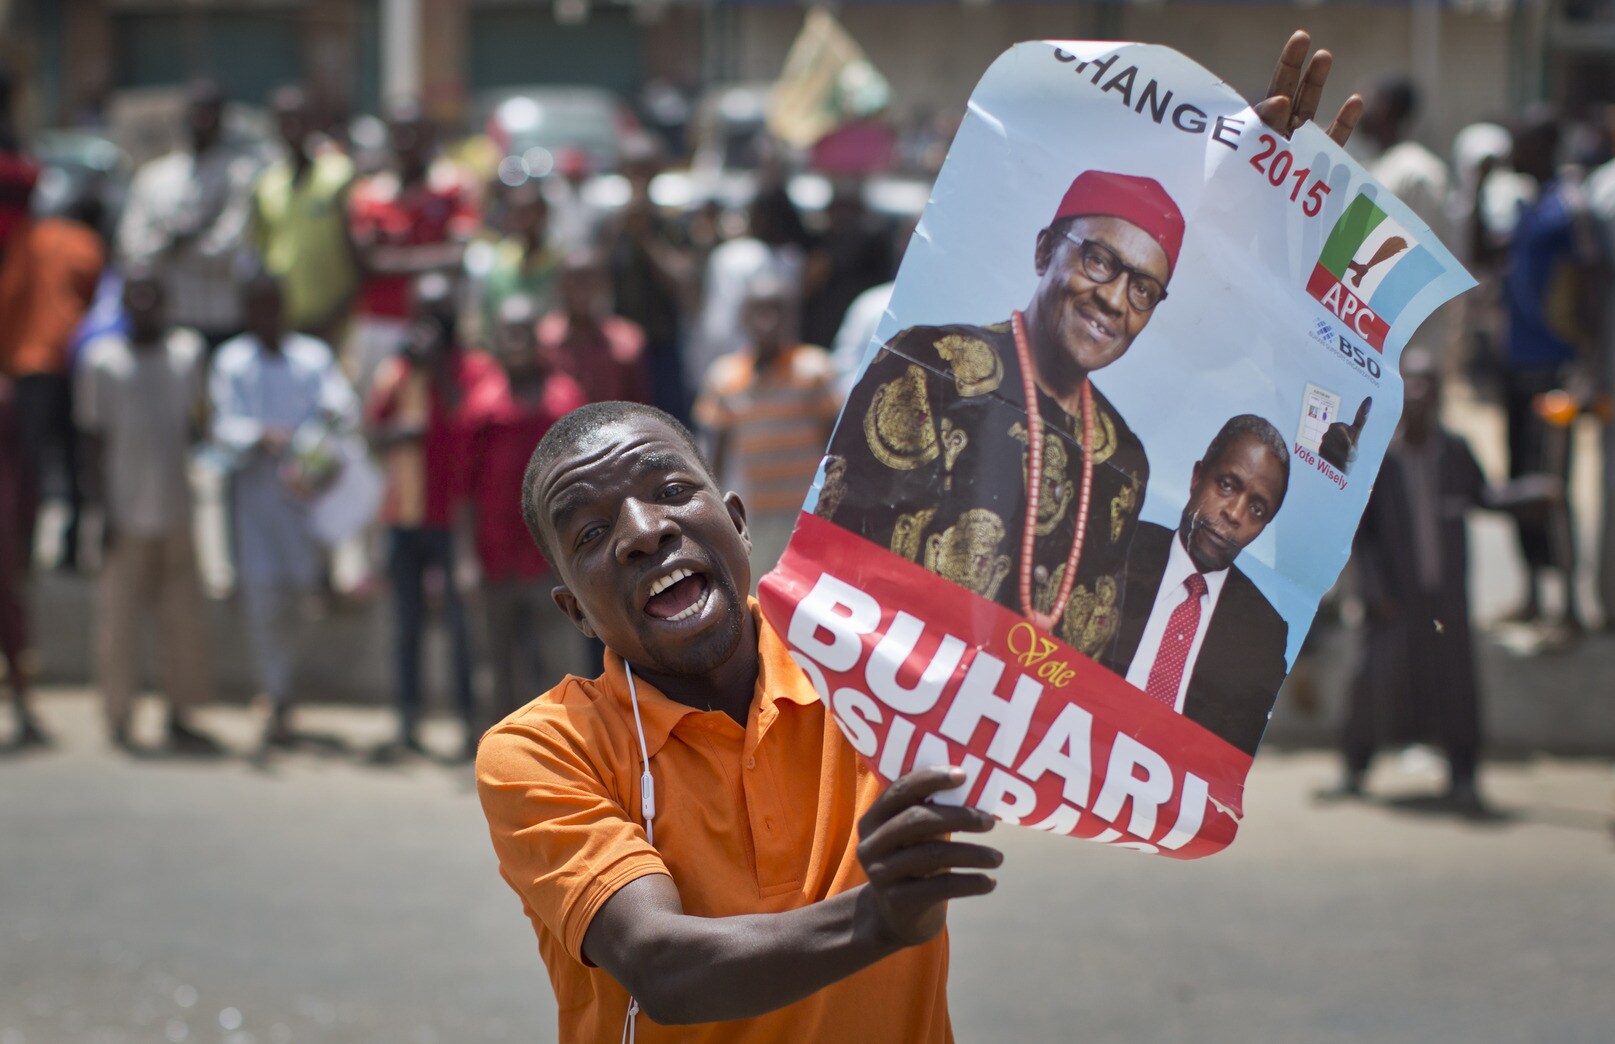 Oppositieleider Buhari ruim aan kop in Nigeria